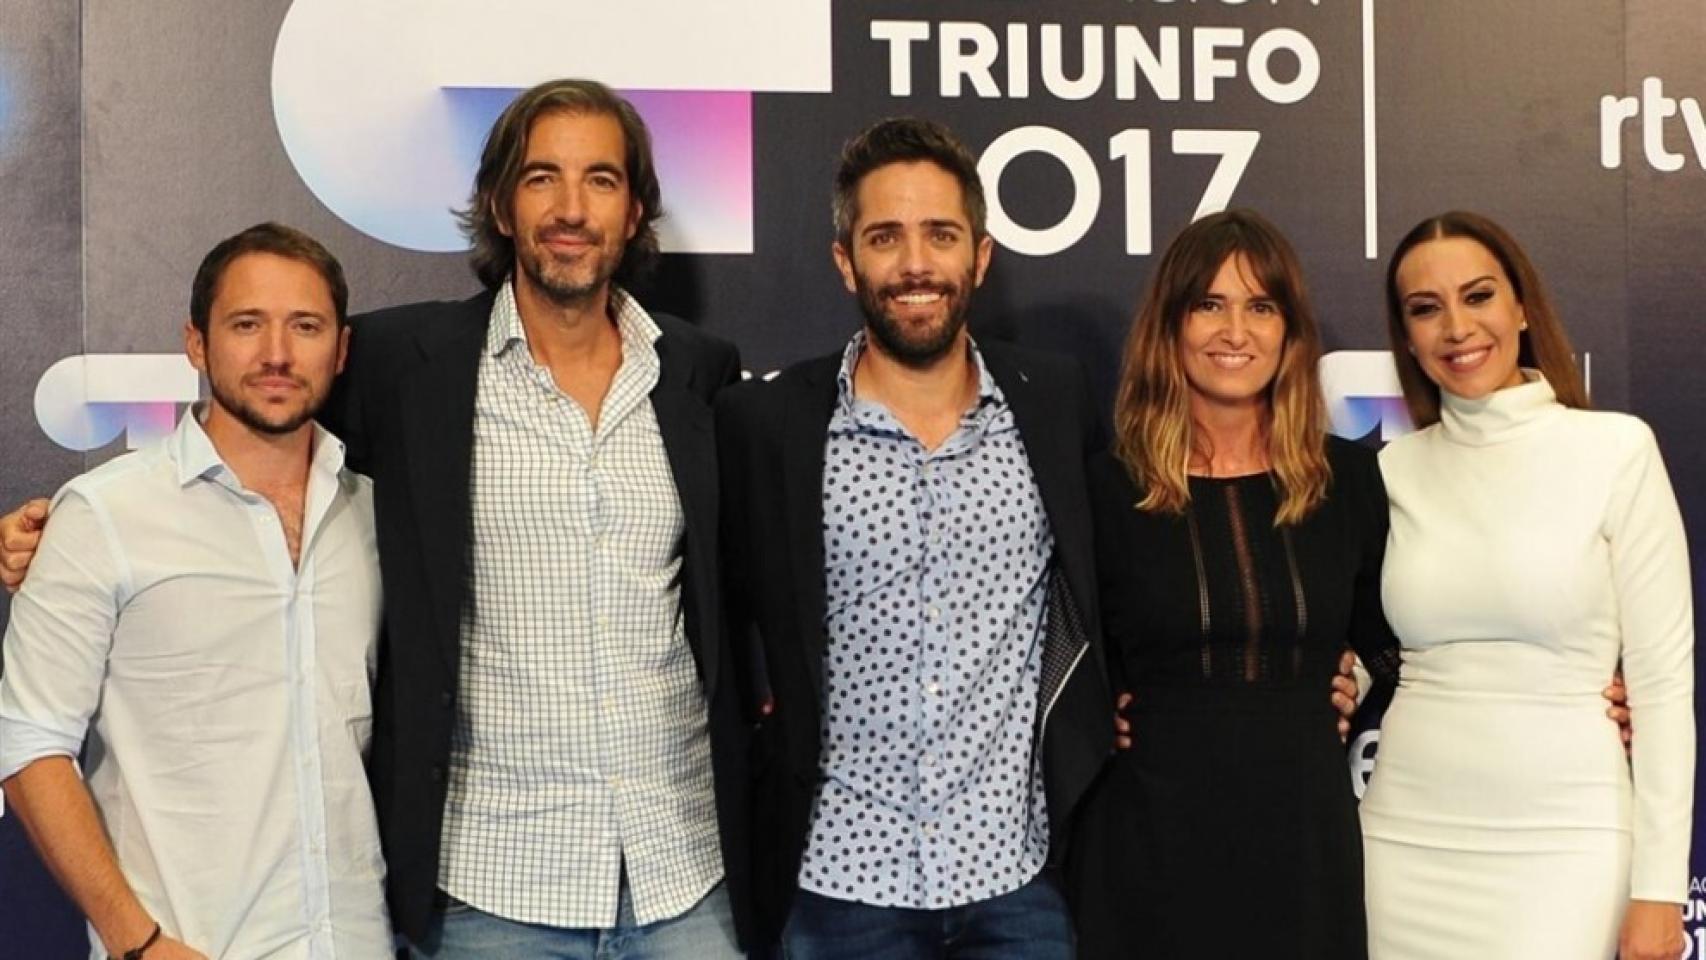 La 1 estrenará 'Operación Triunfo 2017' el próximo lunes 23 de octubre